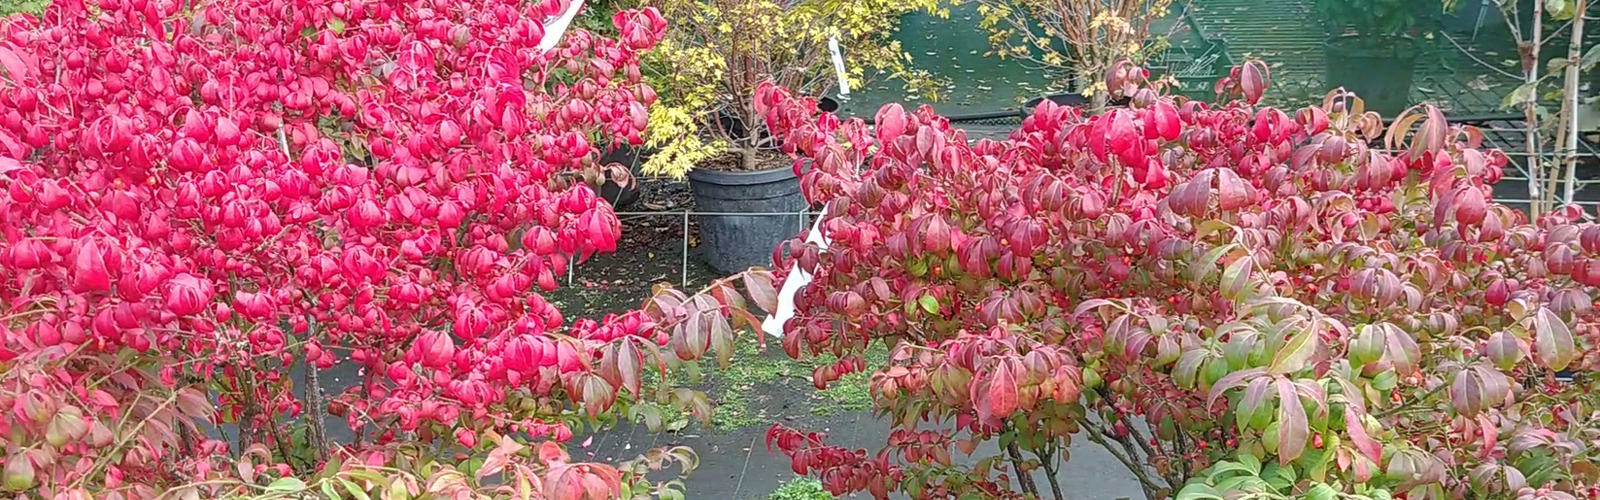 Sobriquette Vervullen haspel Struiken Met Geweldige Herfstkleuren » Tuinplantenshop